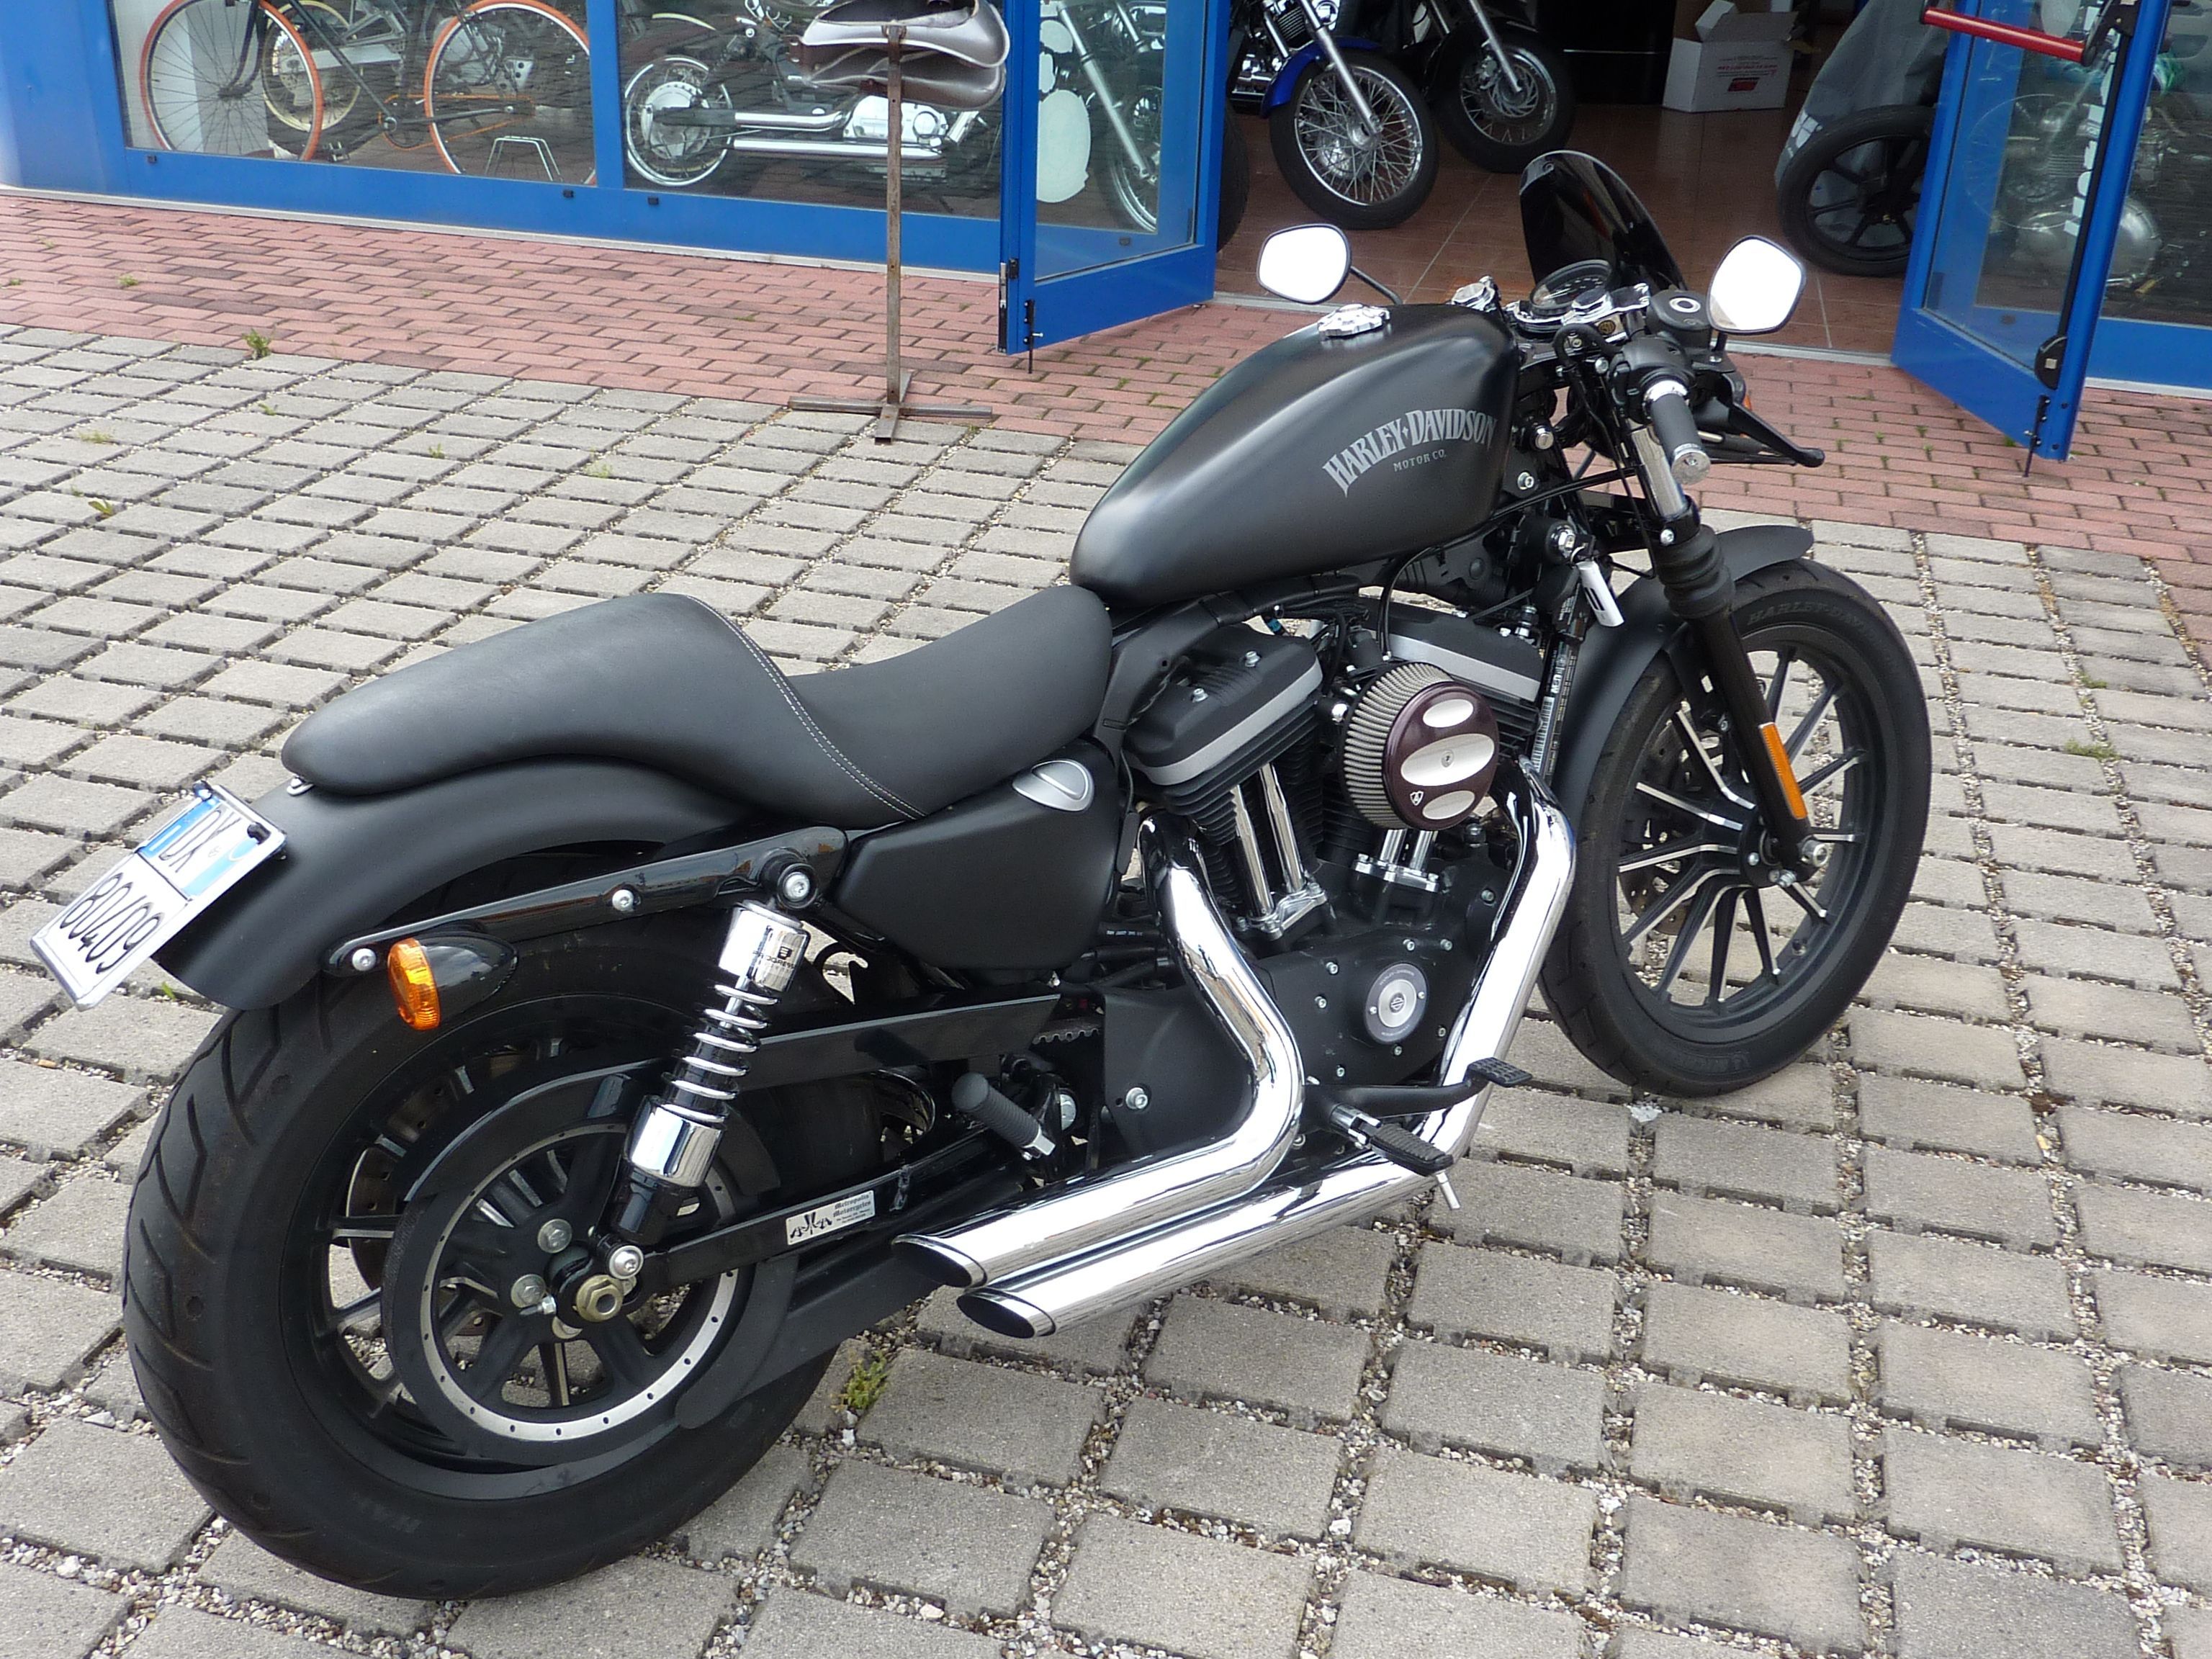 Harley-Davidson Sportster 883 Iron, estilo café, modificada por Chop